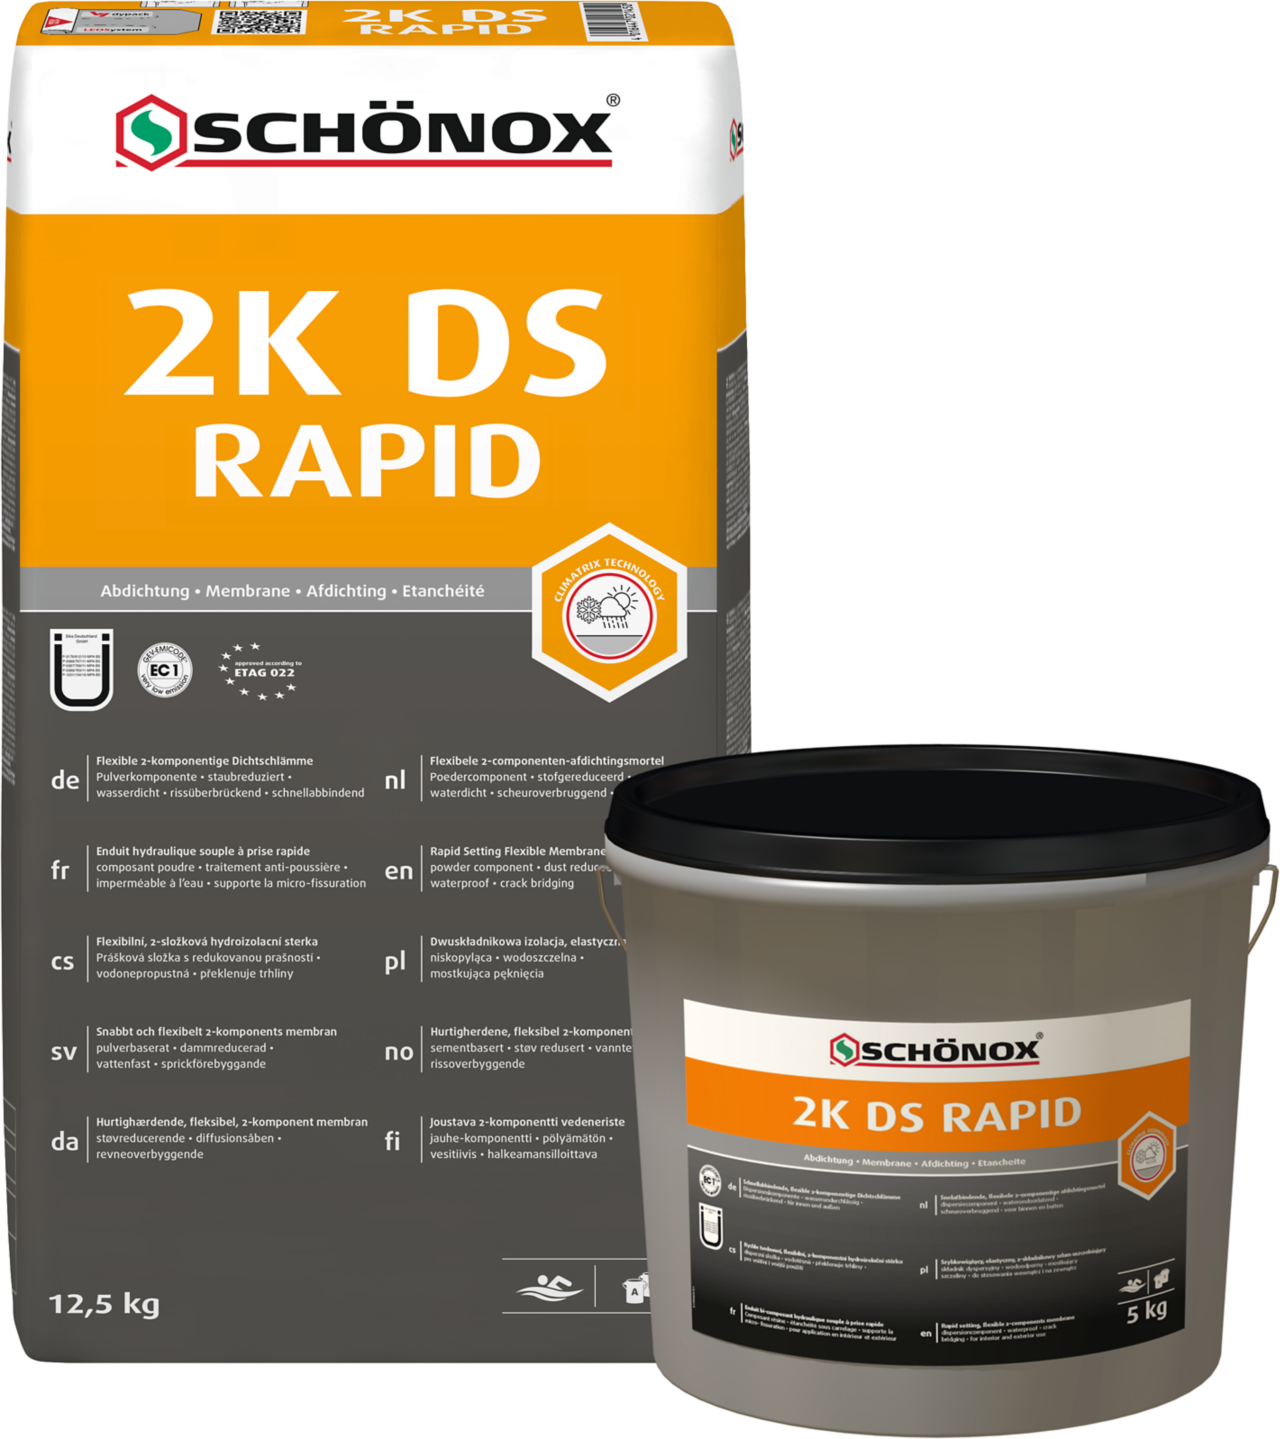 Schönox 2K DS Rapid